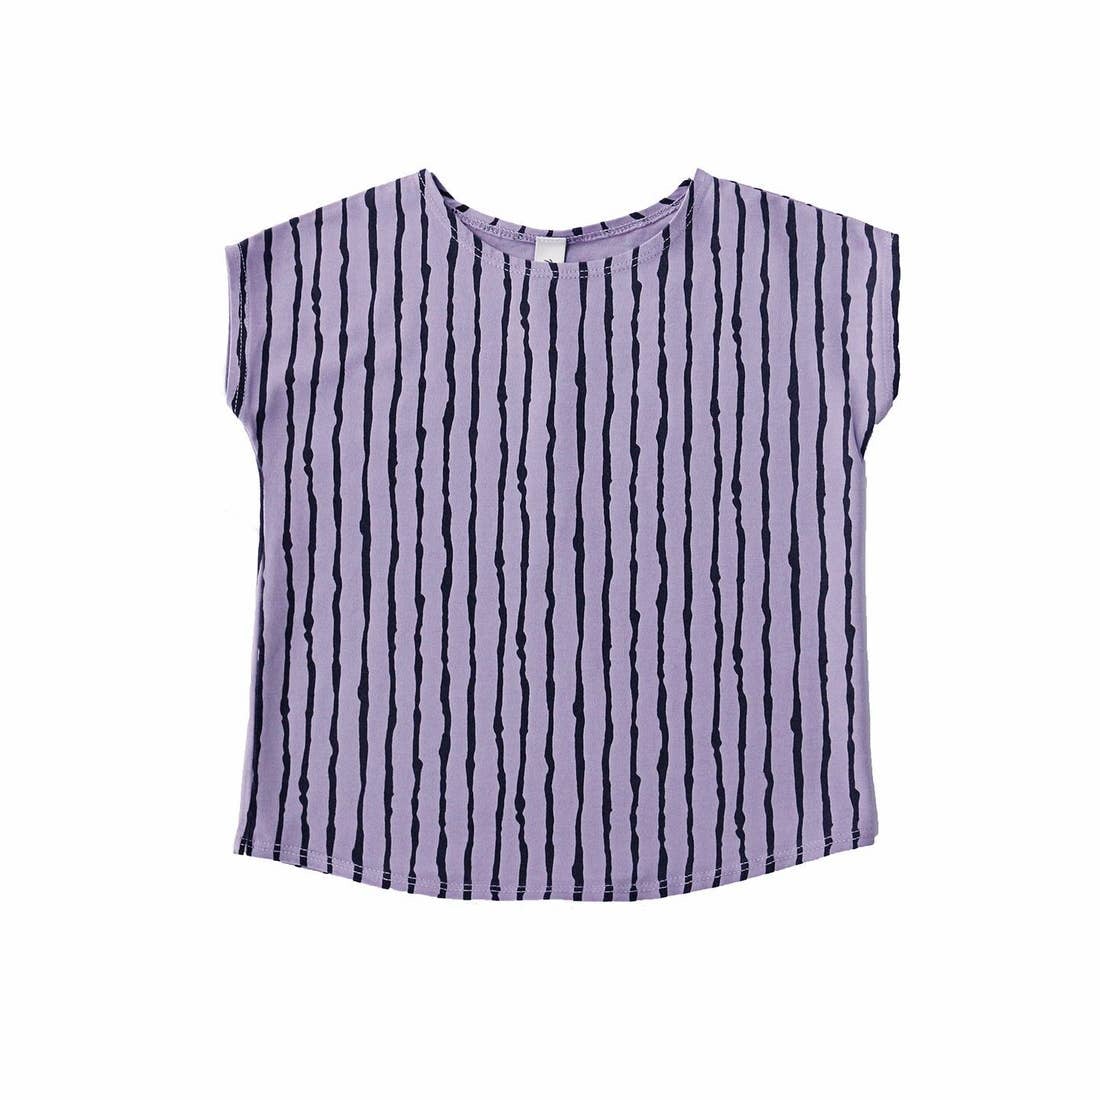 Violet Seaweed Tee Shirt